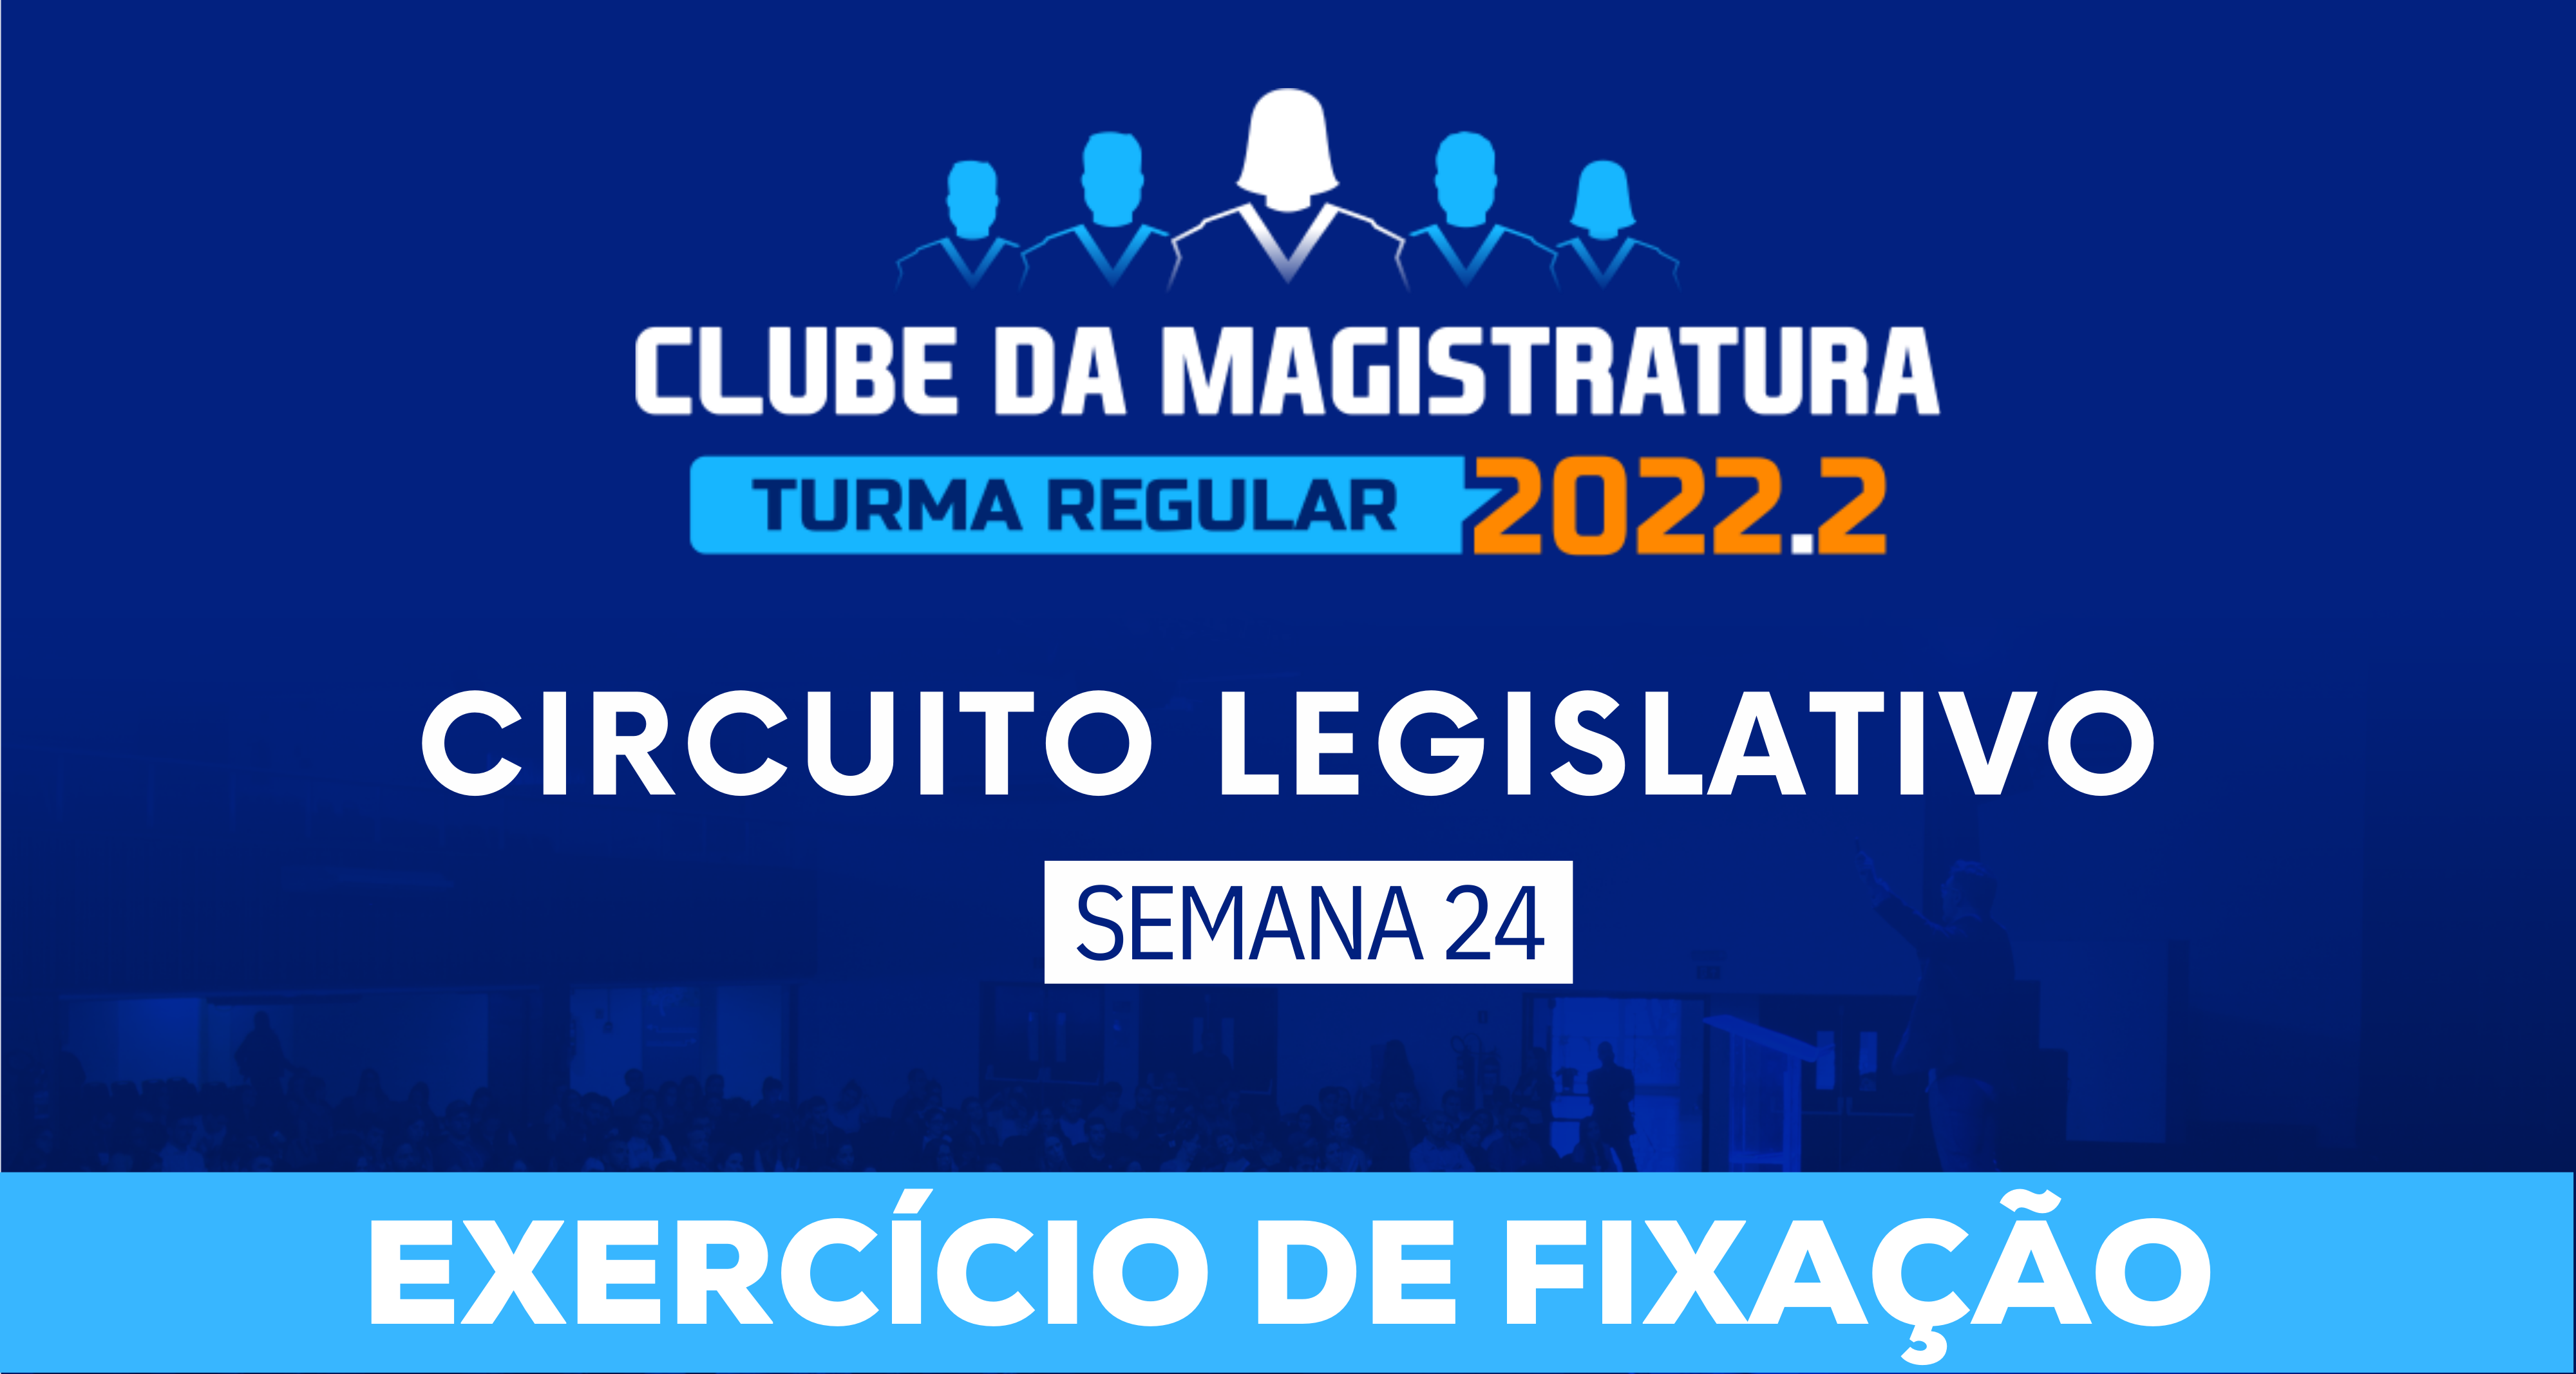 Circuito Legislativo 2022.2 (Clube da Magistratura - Semana 24)